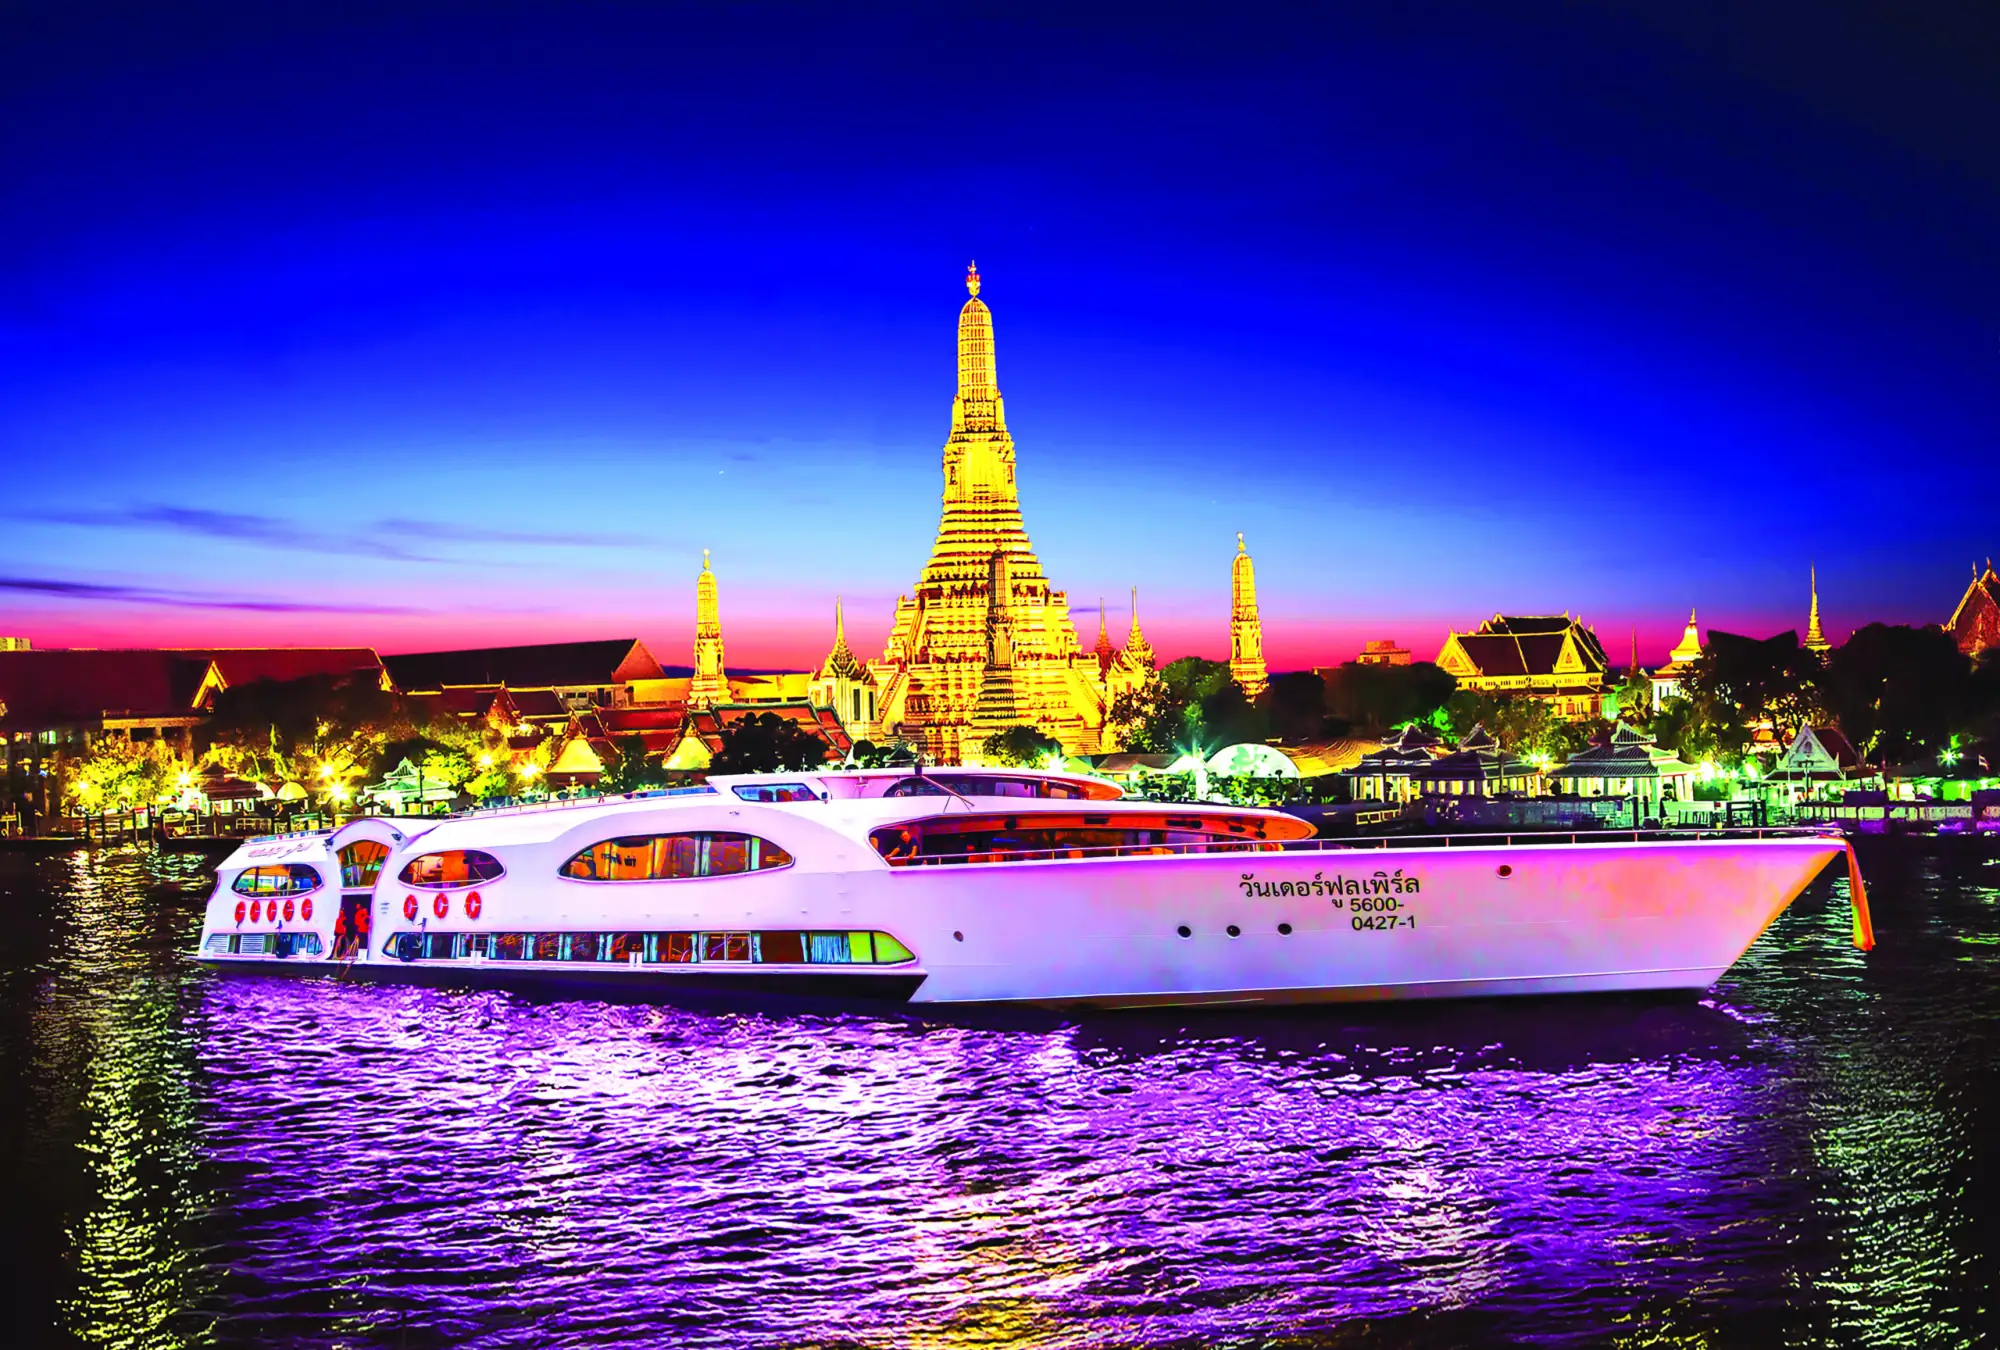 曼谷璀璨珍珠號遊船是一艘3層樓豪華郵輪 是眾多選項中最大型、最豪華（圖片來源：業者提供）